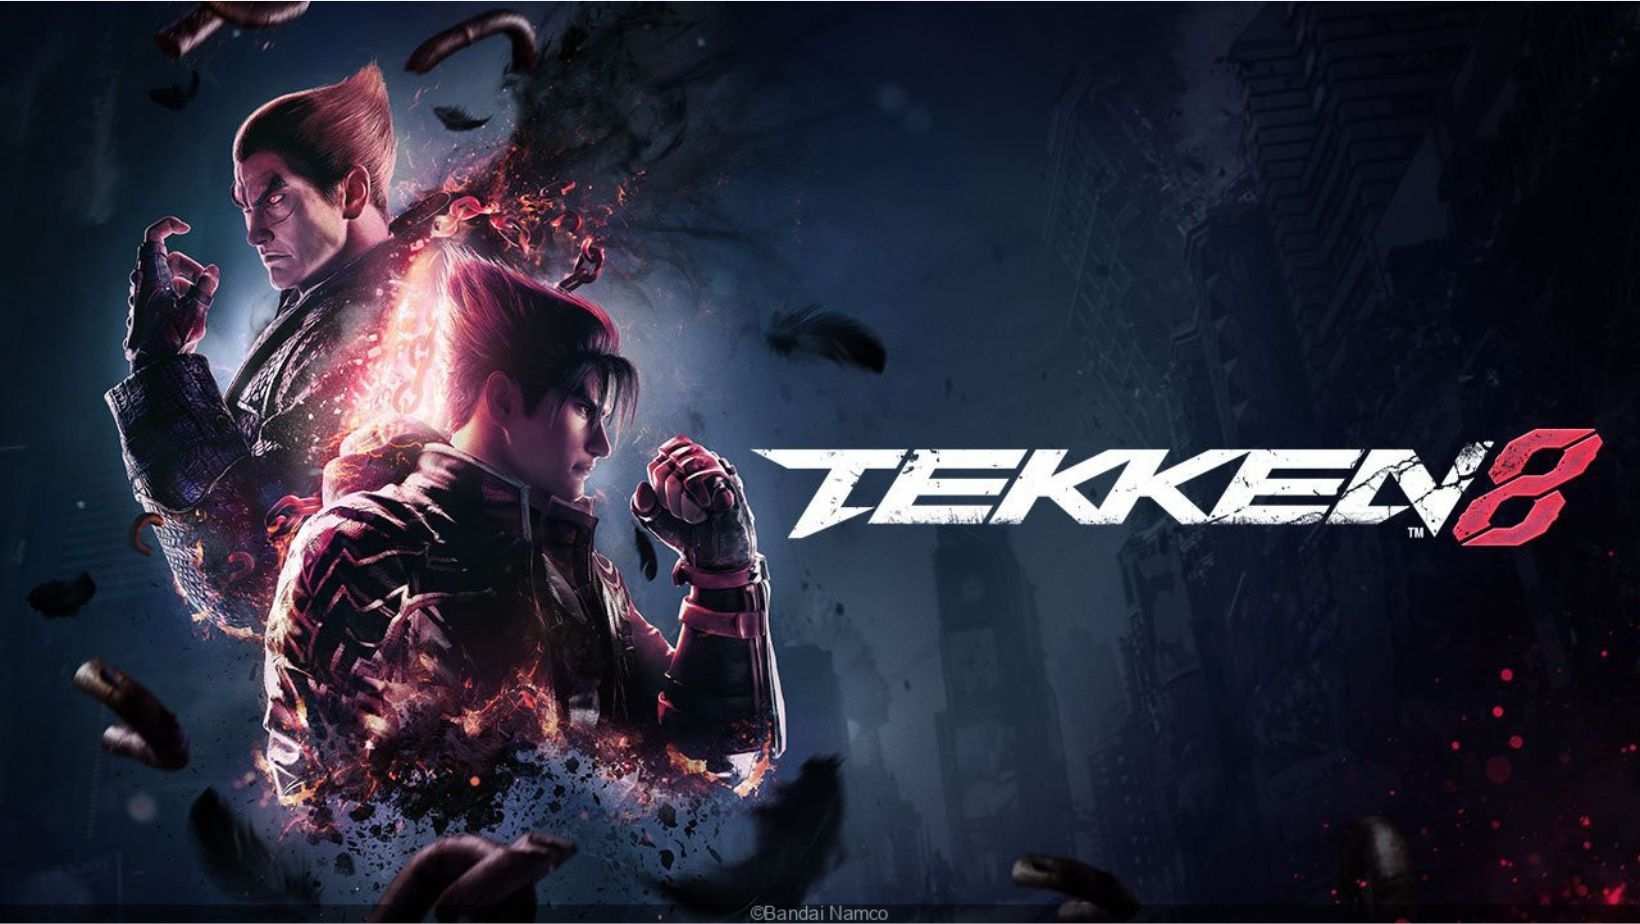   Tekken 8 Demo Crack Download! Check Out Latest Leaks